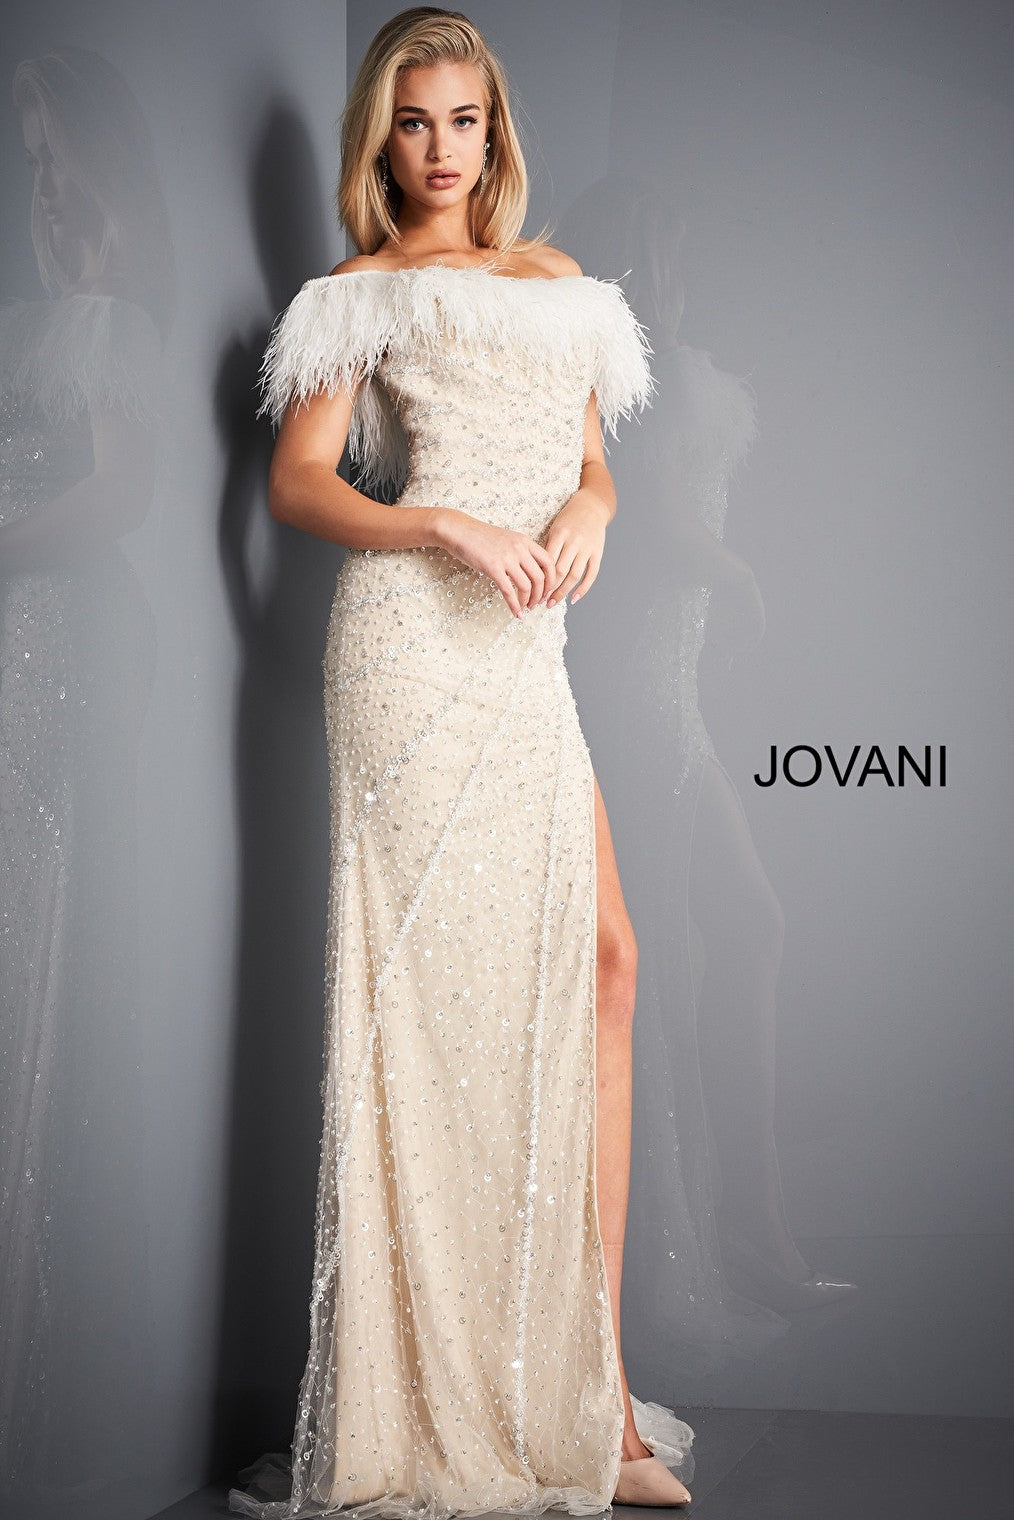 Off white embellished Jovani evening dress 4770